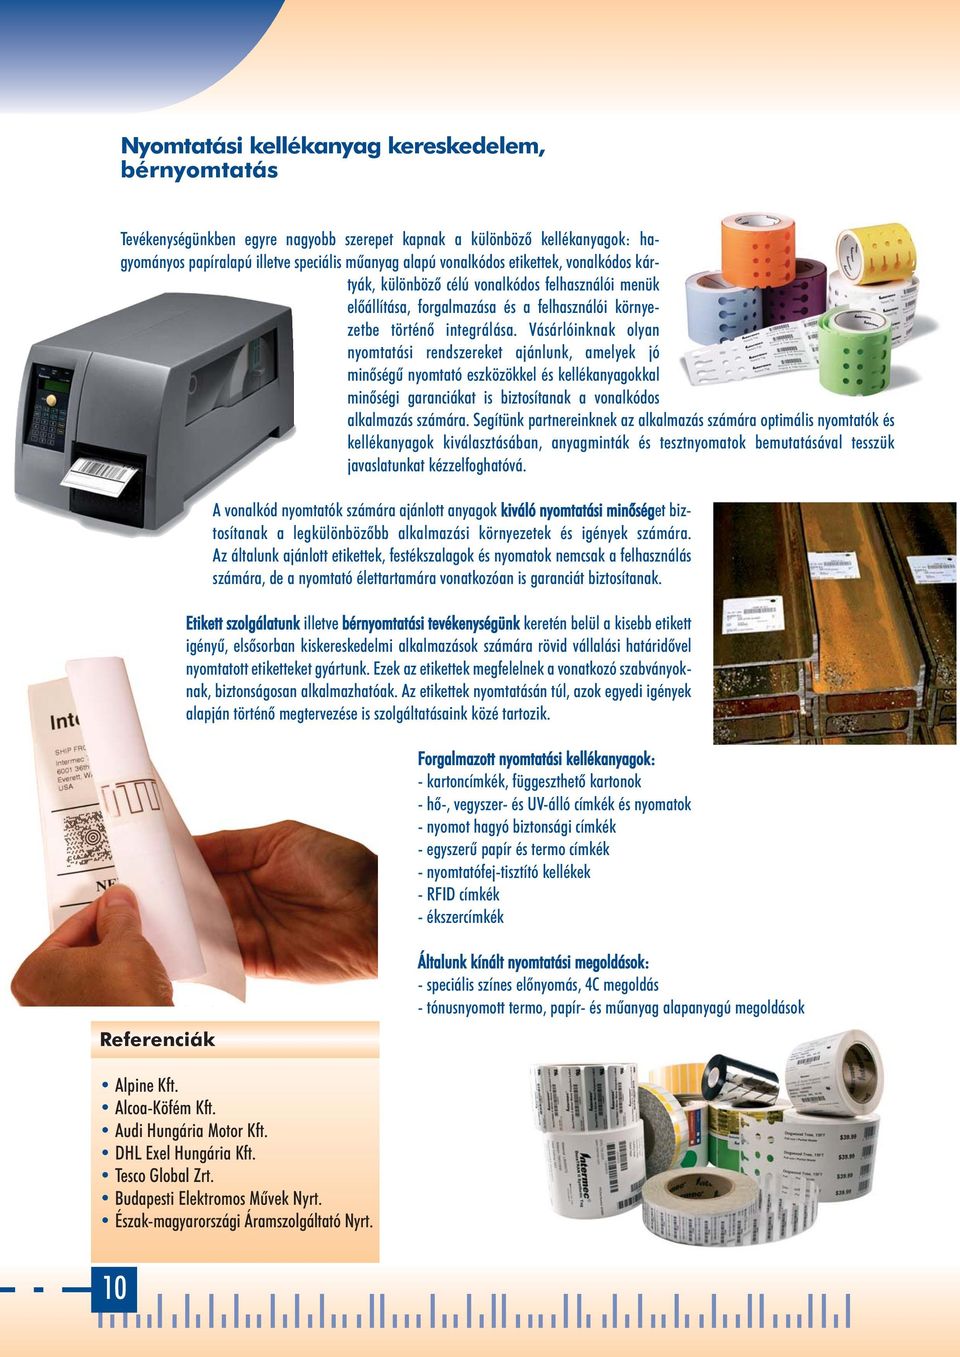 Vásárlóinknak olyan nyomtatási rendszereket ajánlunk, amelyek jó minôségû nyomtató eszközökkel és kellékanyagokkal minôségi garanciákat is biztosítanak a vonalkódos alkalmazás számára.